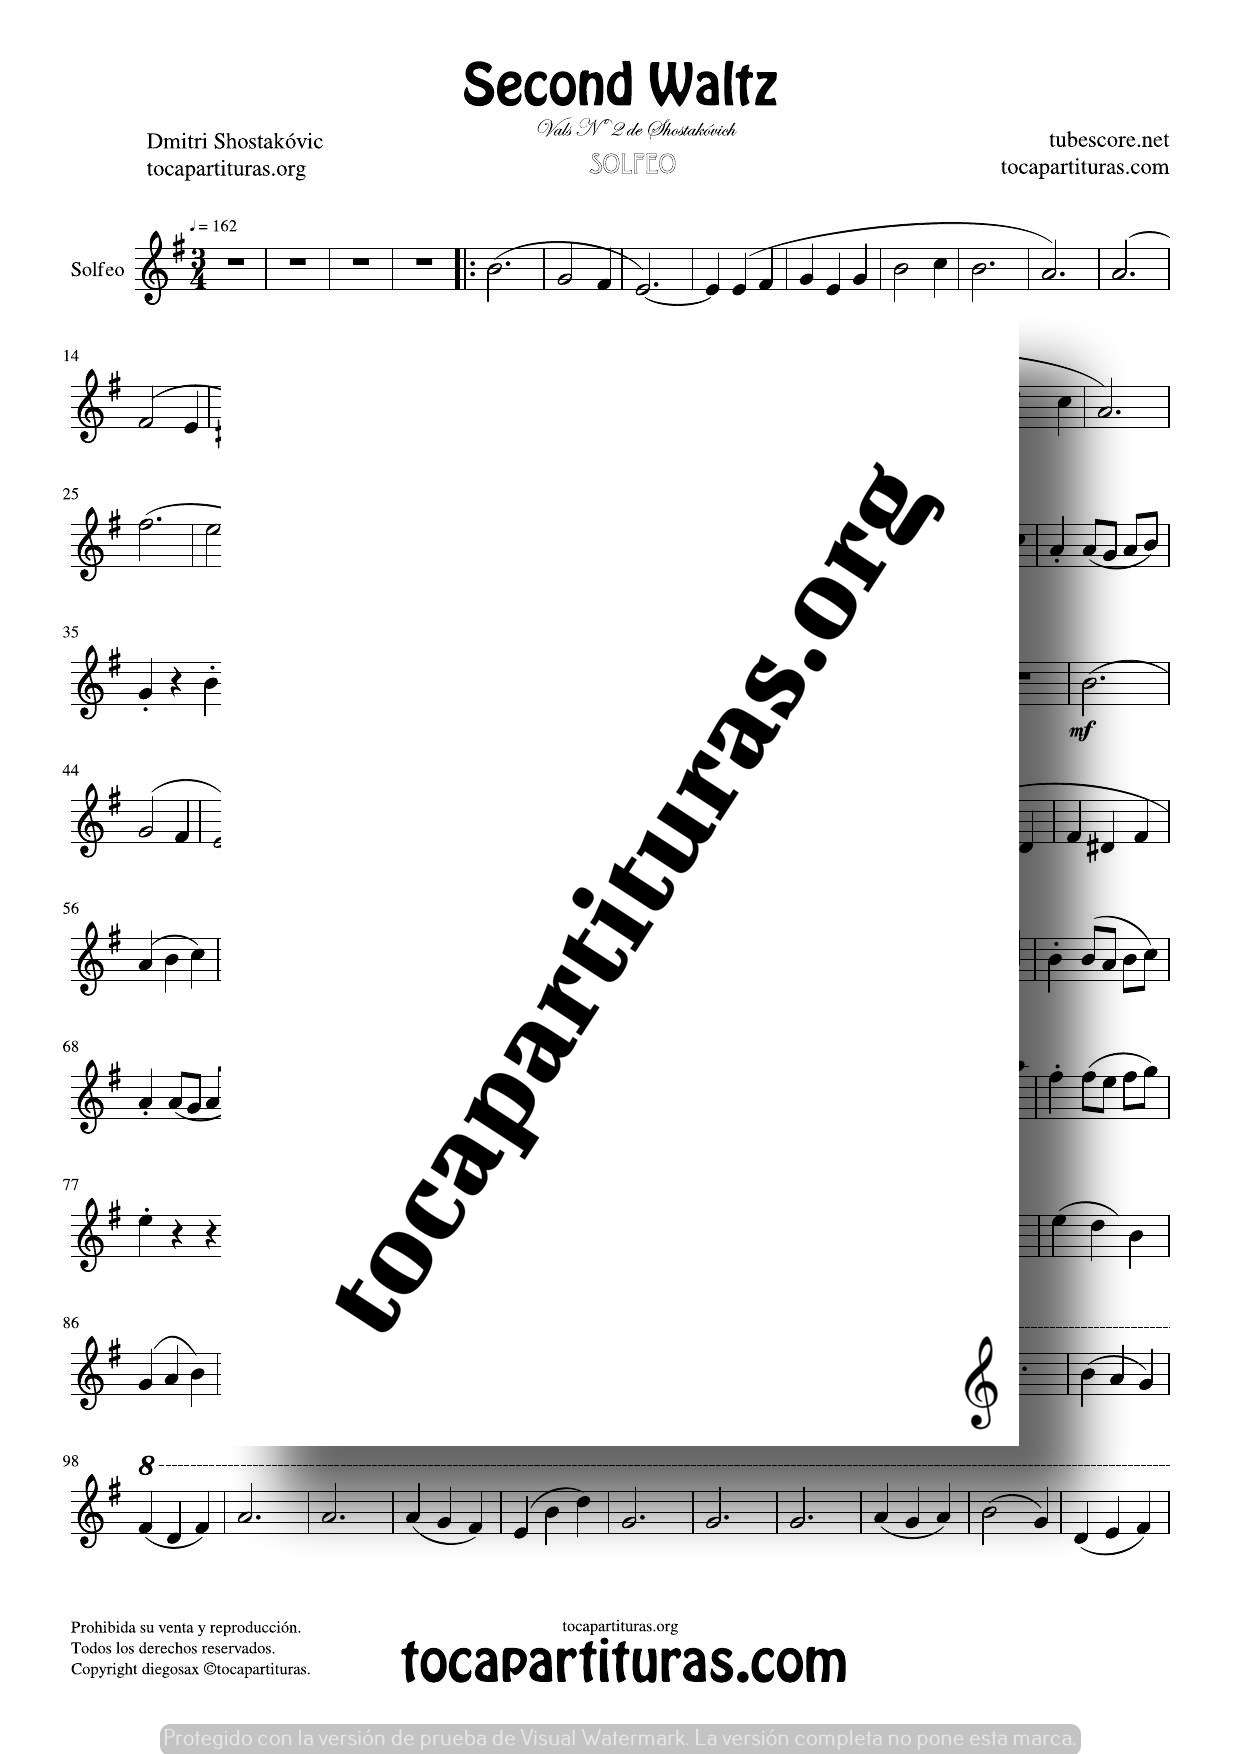 Second Waltz Partitura para Solfear (Entonación y Ritmo) en Clave de Sol Vals Nº 2 Shostakovich Easy PDF MIDI KARAOKE MP3